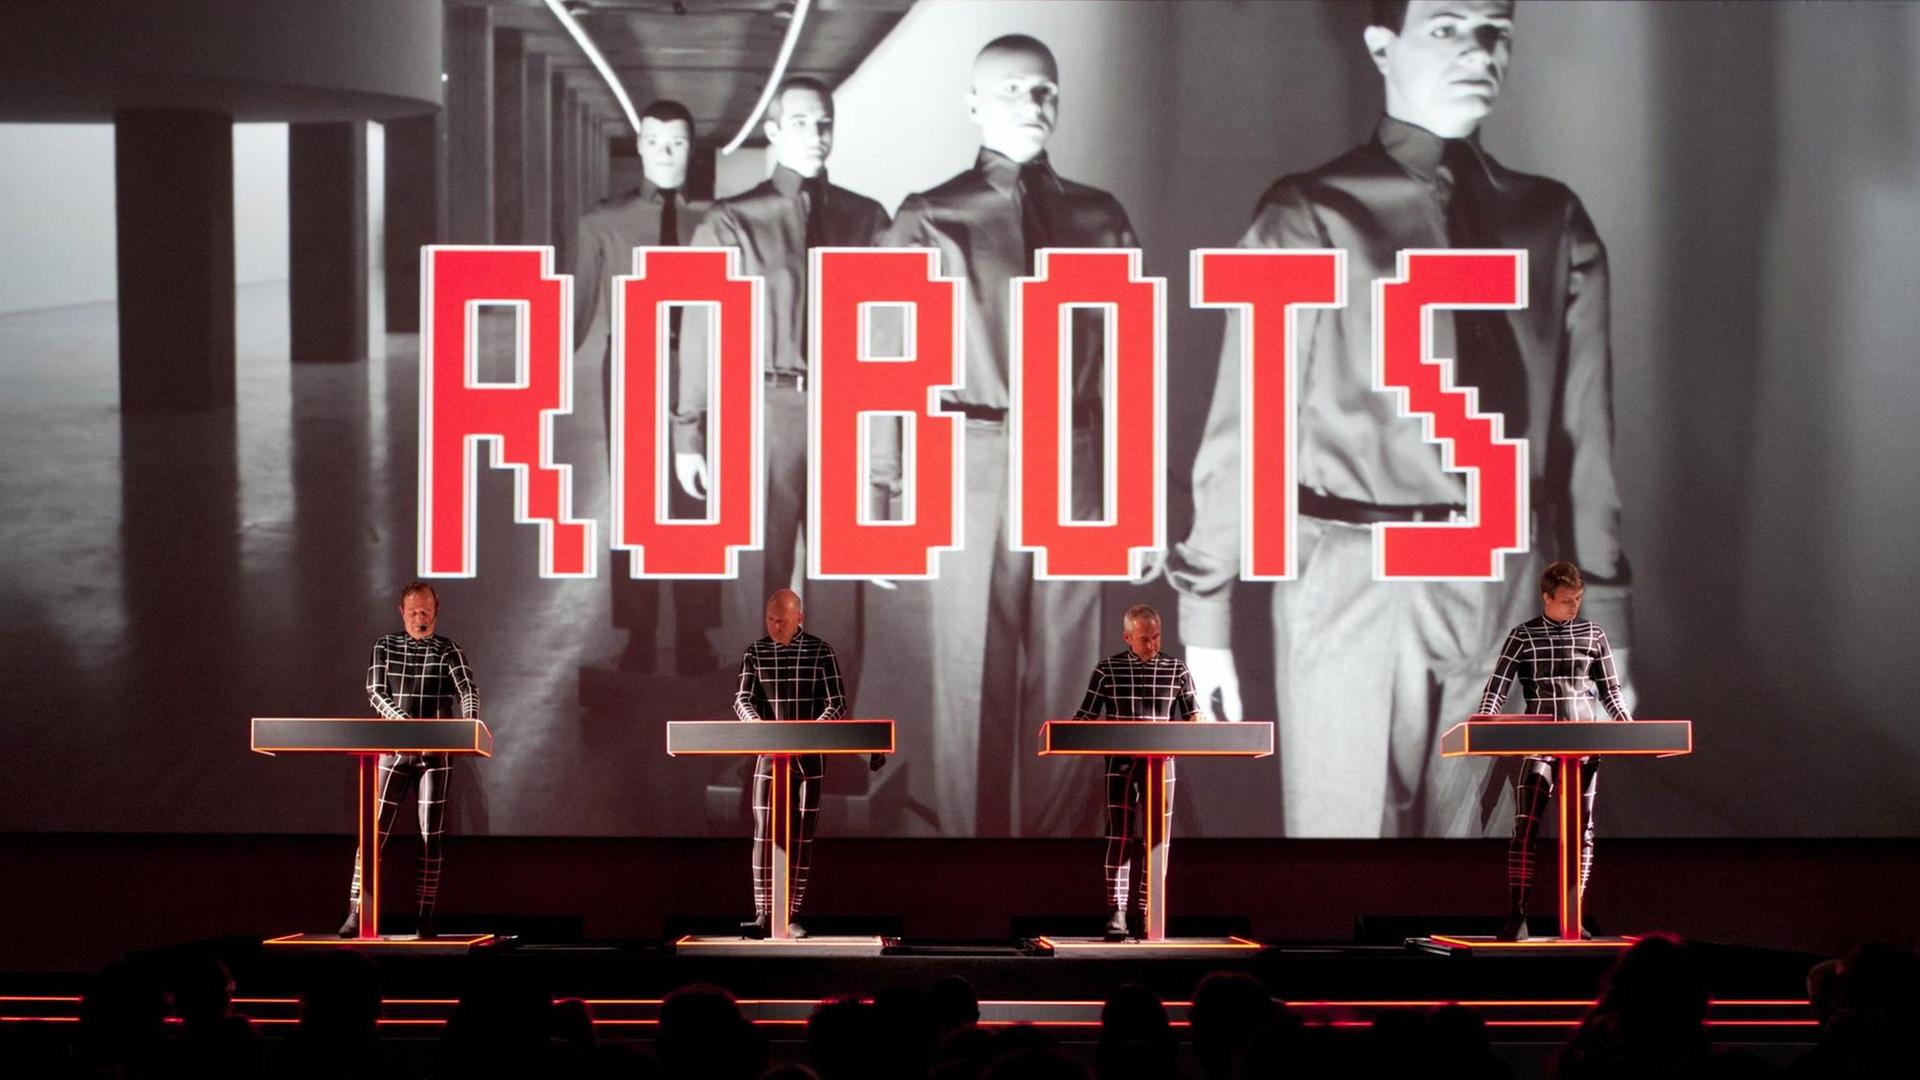 Die vier Musiker von Kraftwerk stehen auf der Bühne, hinter ihnen ein roter "Roberts" Schriftzug